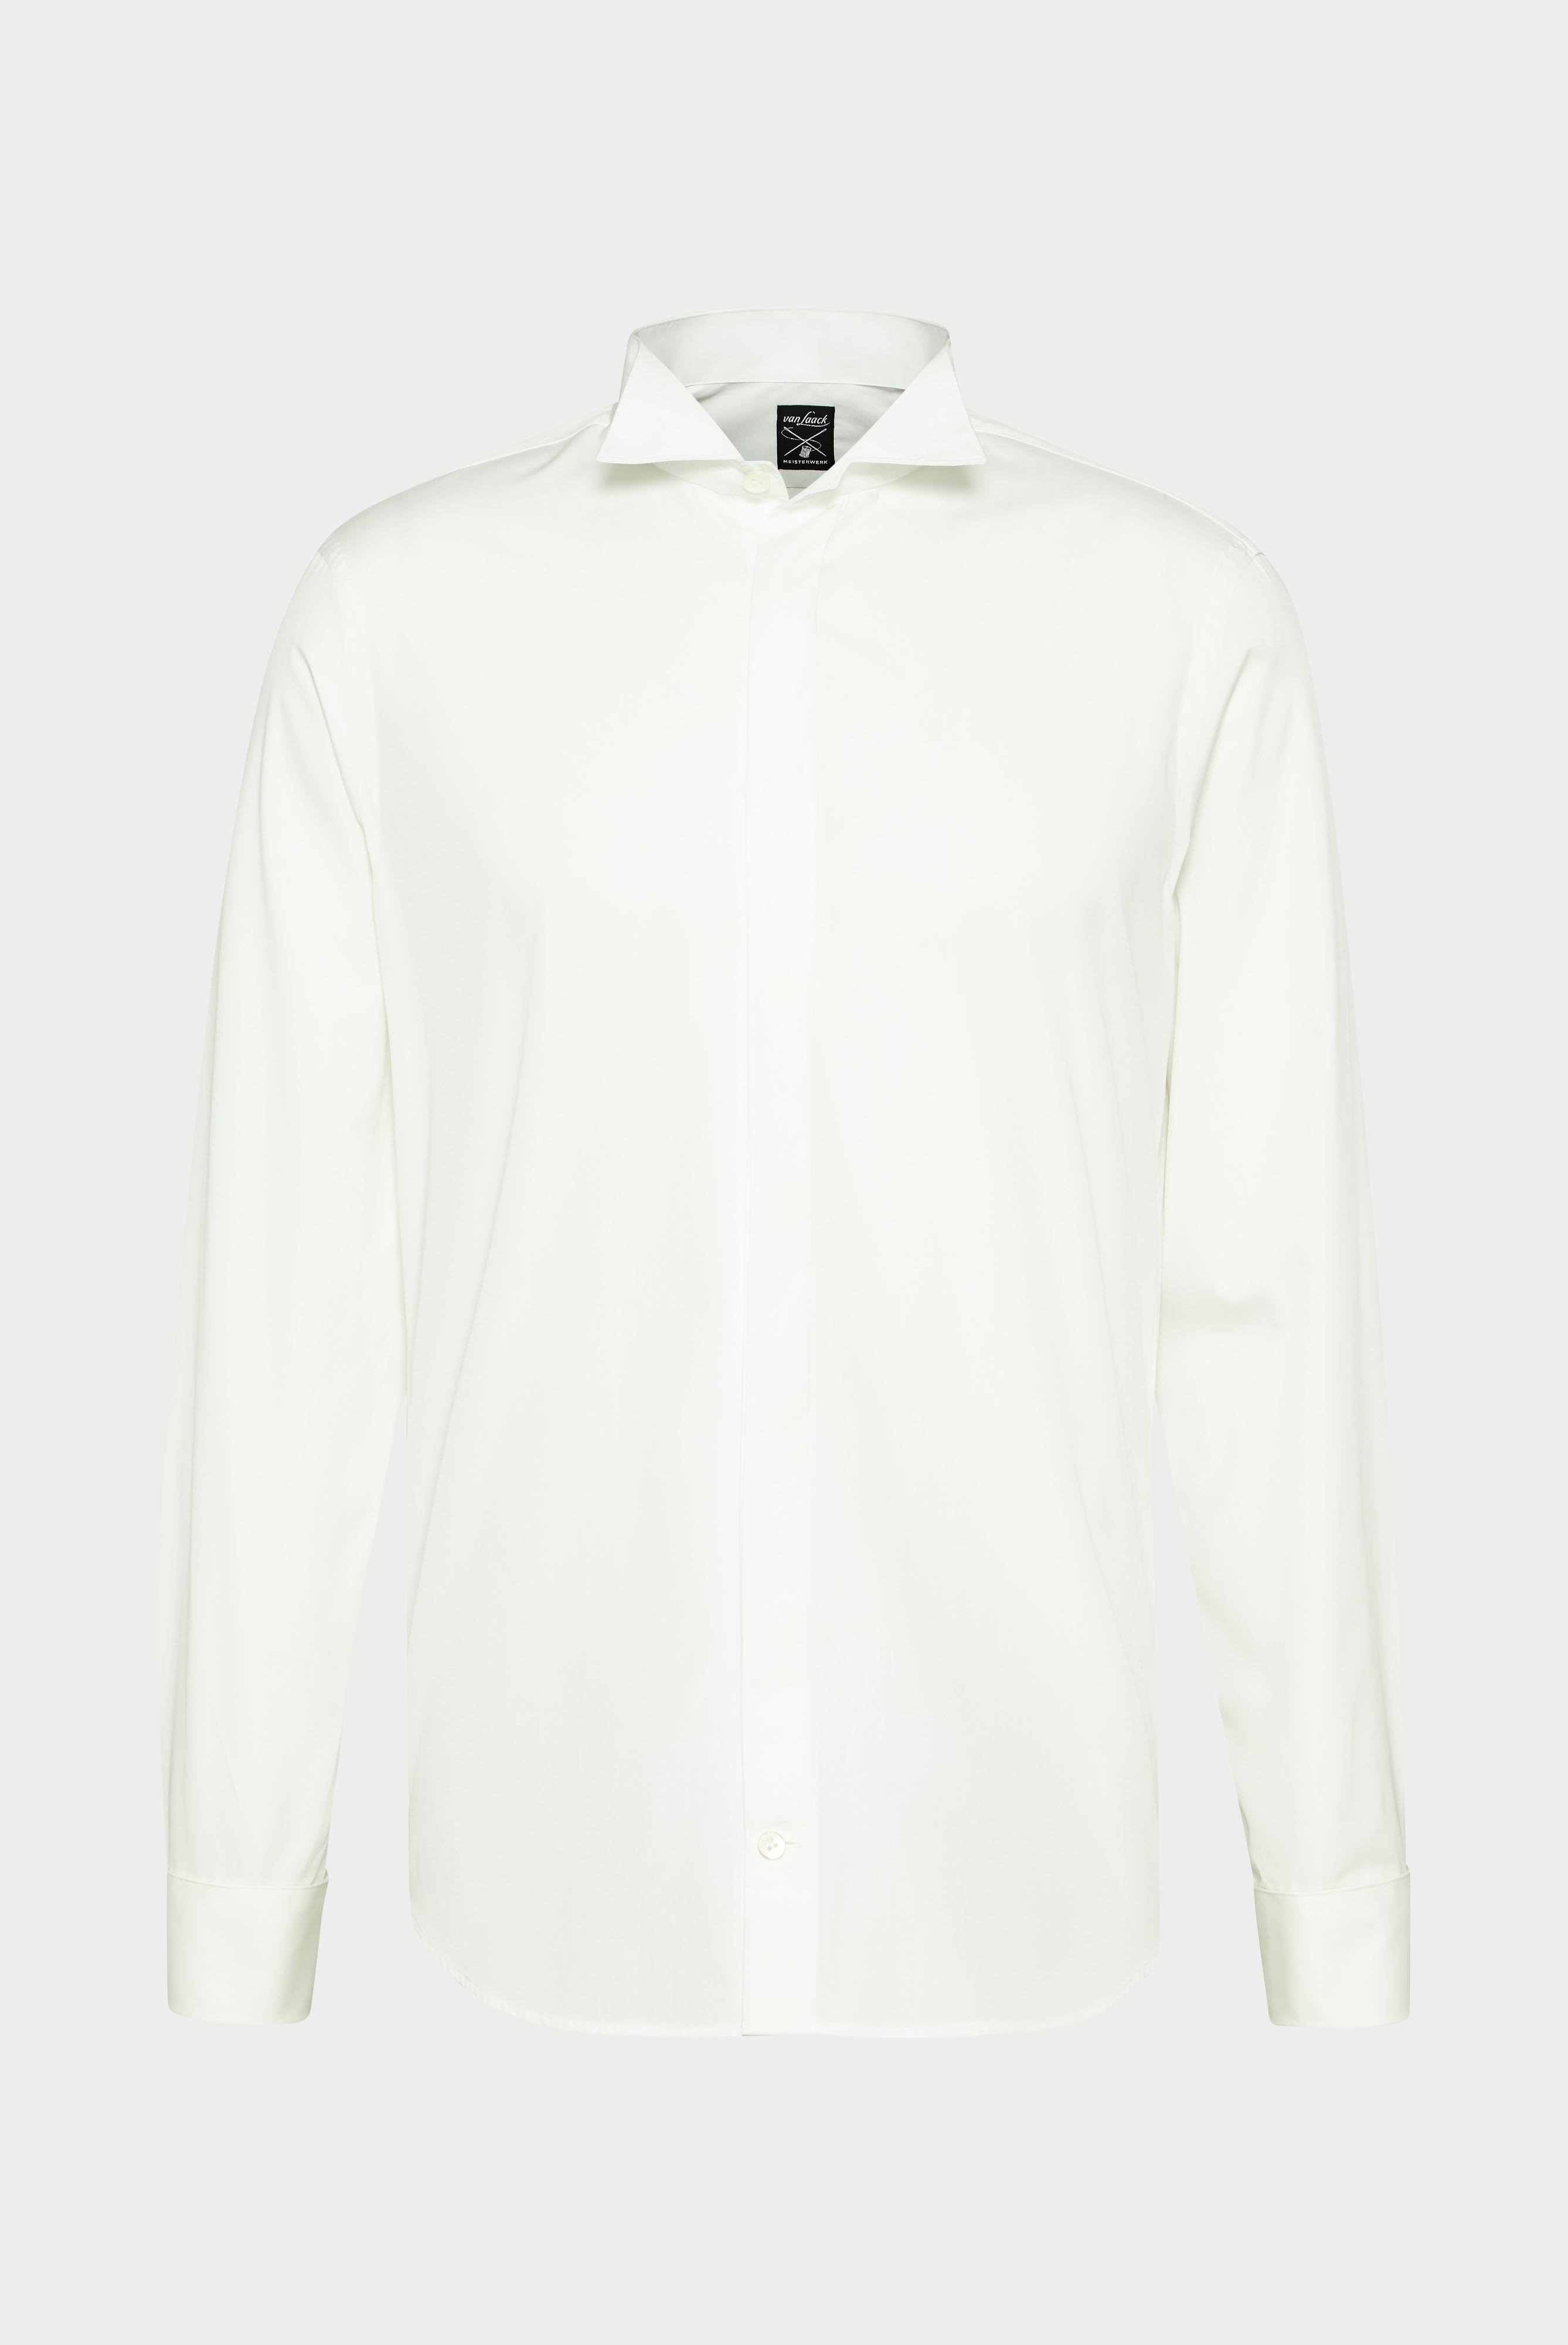 Festliche Hemden+Smokinghemd mit Kläppchenkragen Slim Fit+20.2061.NV.130657.100.37